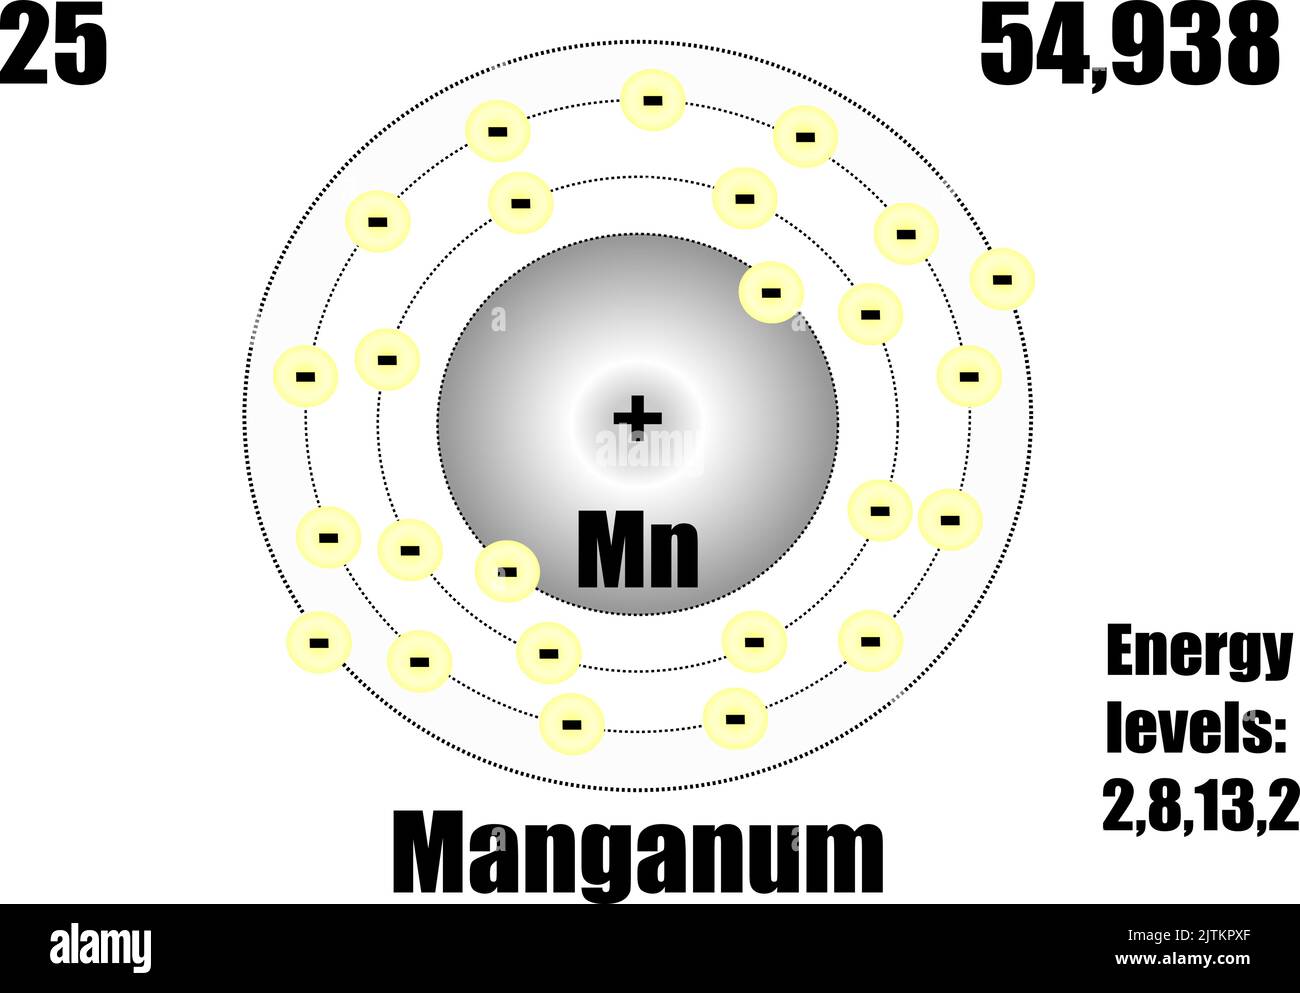 Atome de manganèse, avec masse et niveaux d'énergie. Illustration vectorielle Illustration de Vecteur